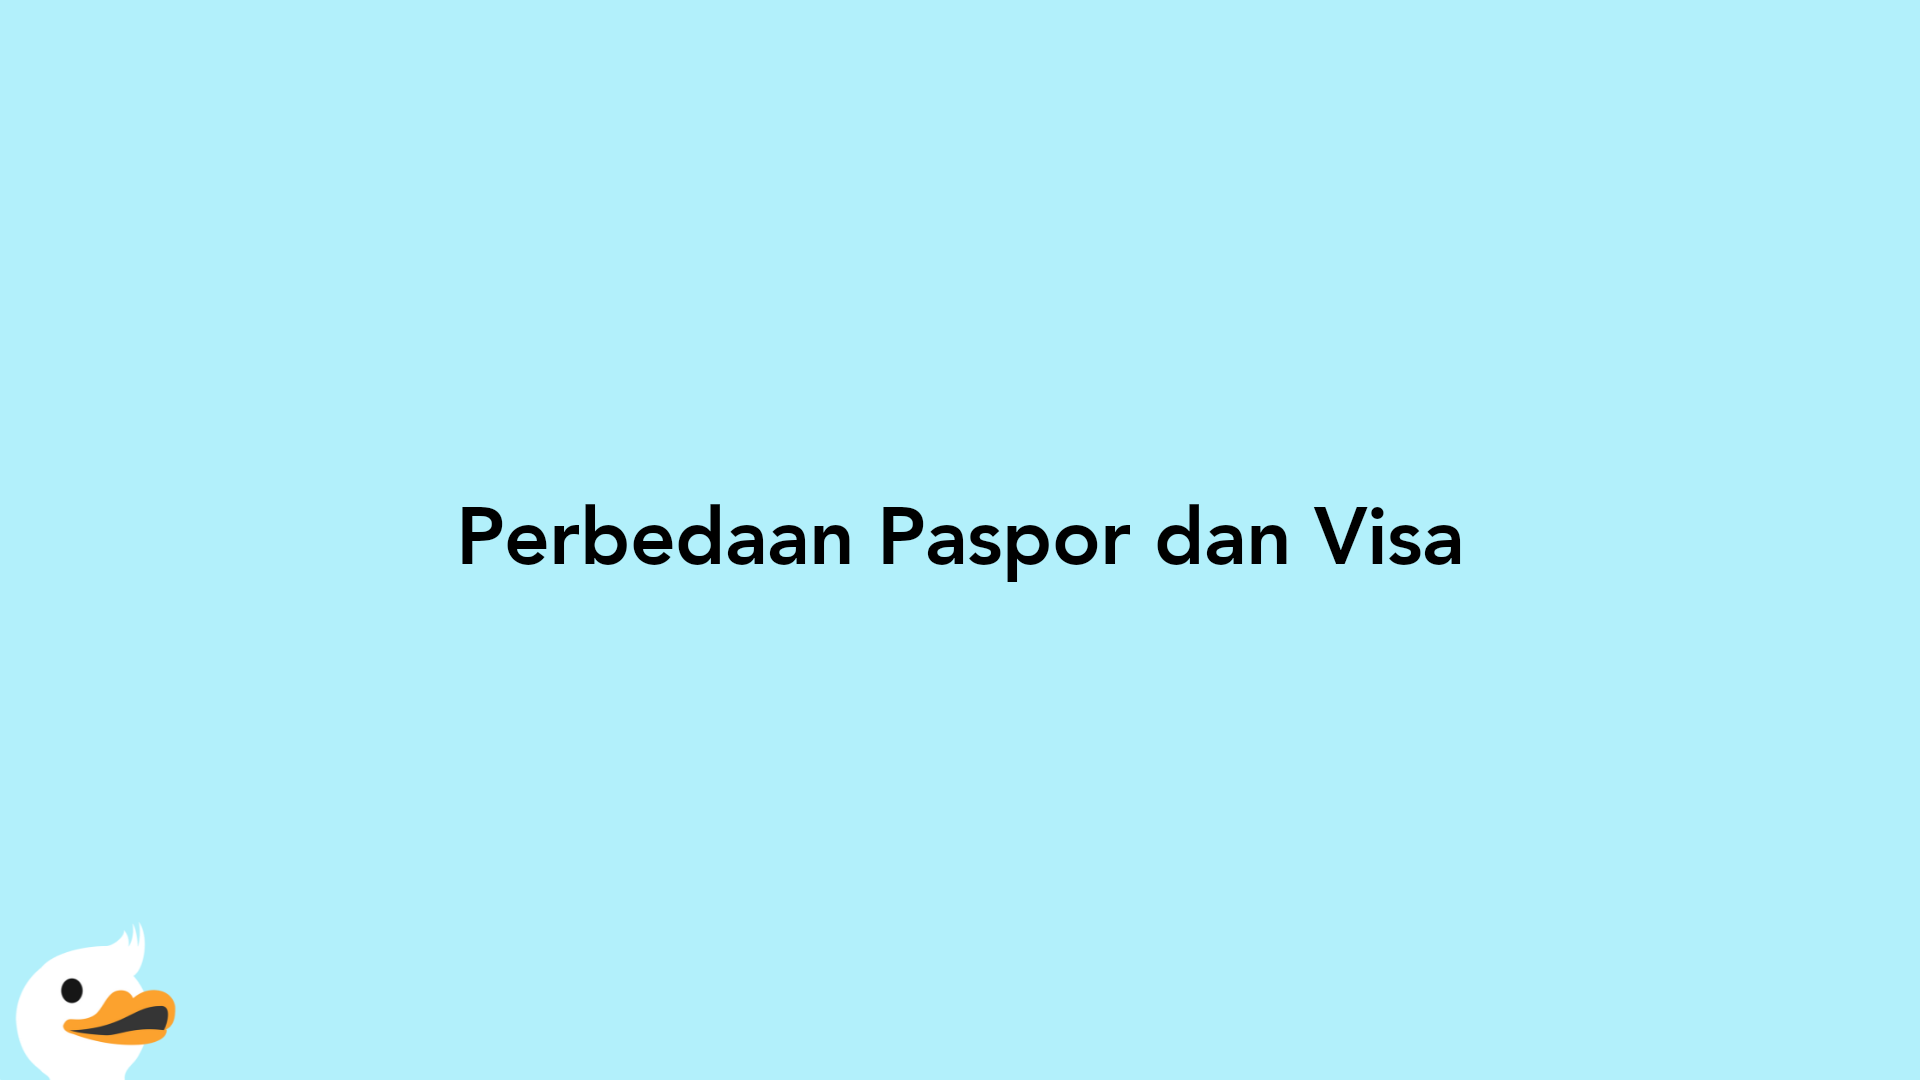 Perbedaan Paspor dan Visa